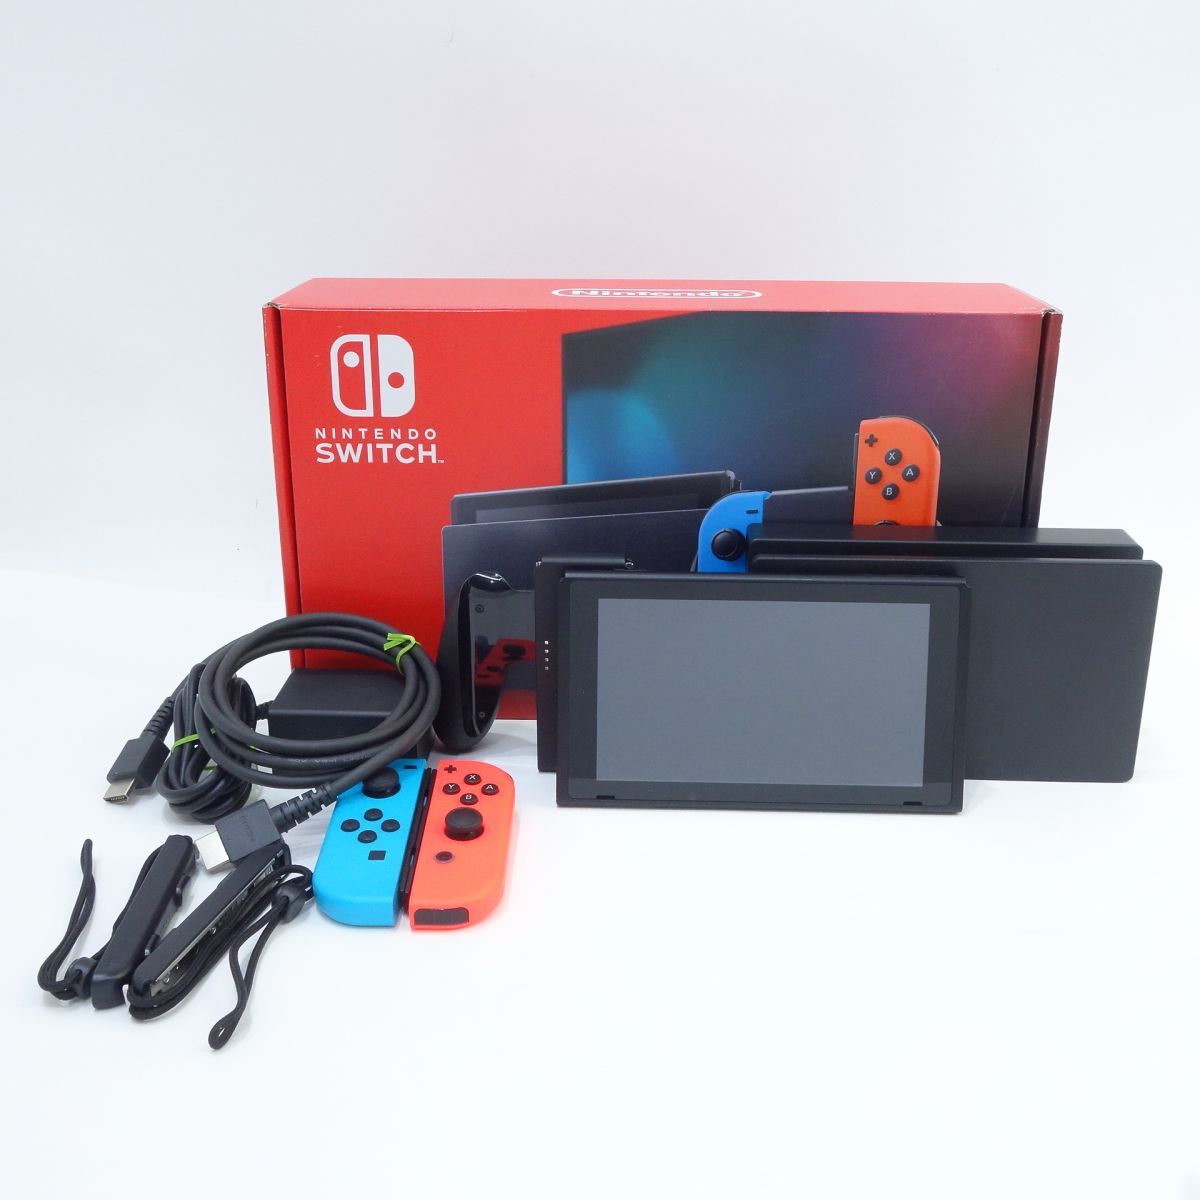 任天堂 Nintendo Switch HAD-S-KABAA [ネオンブルー・ネオンレッド 